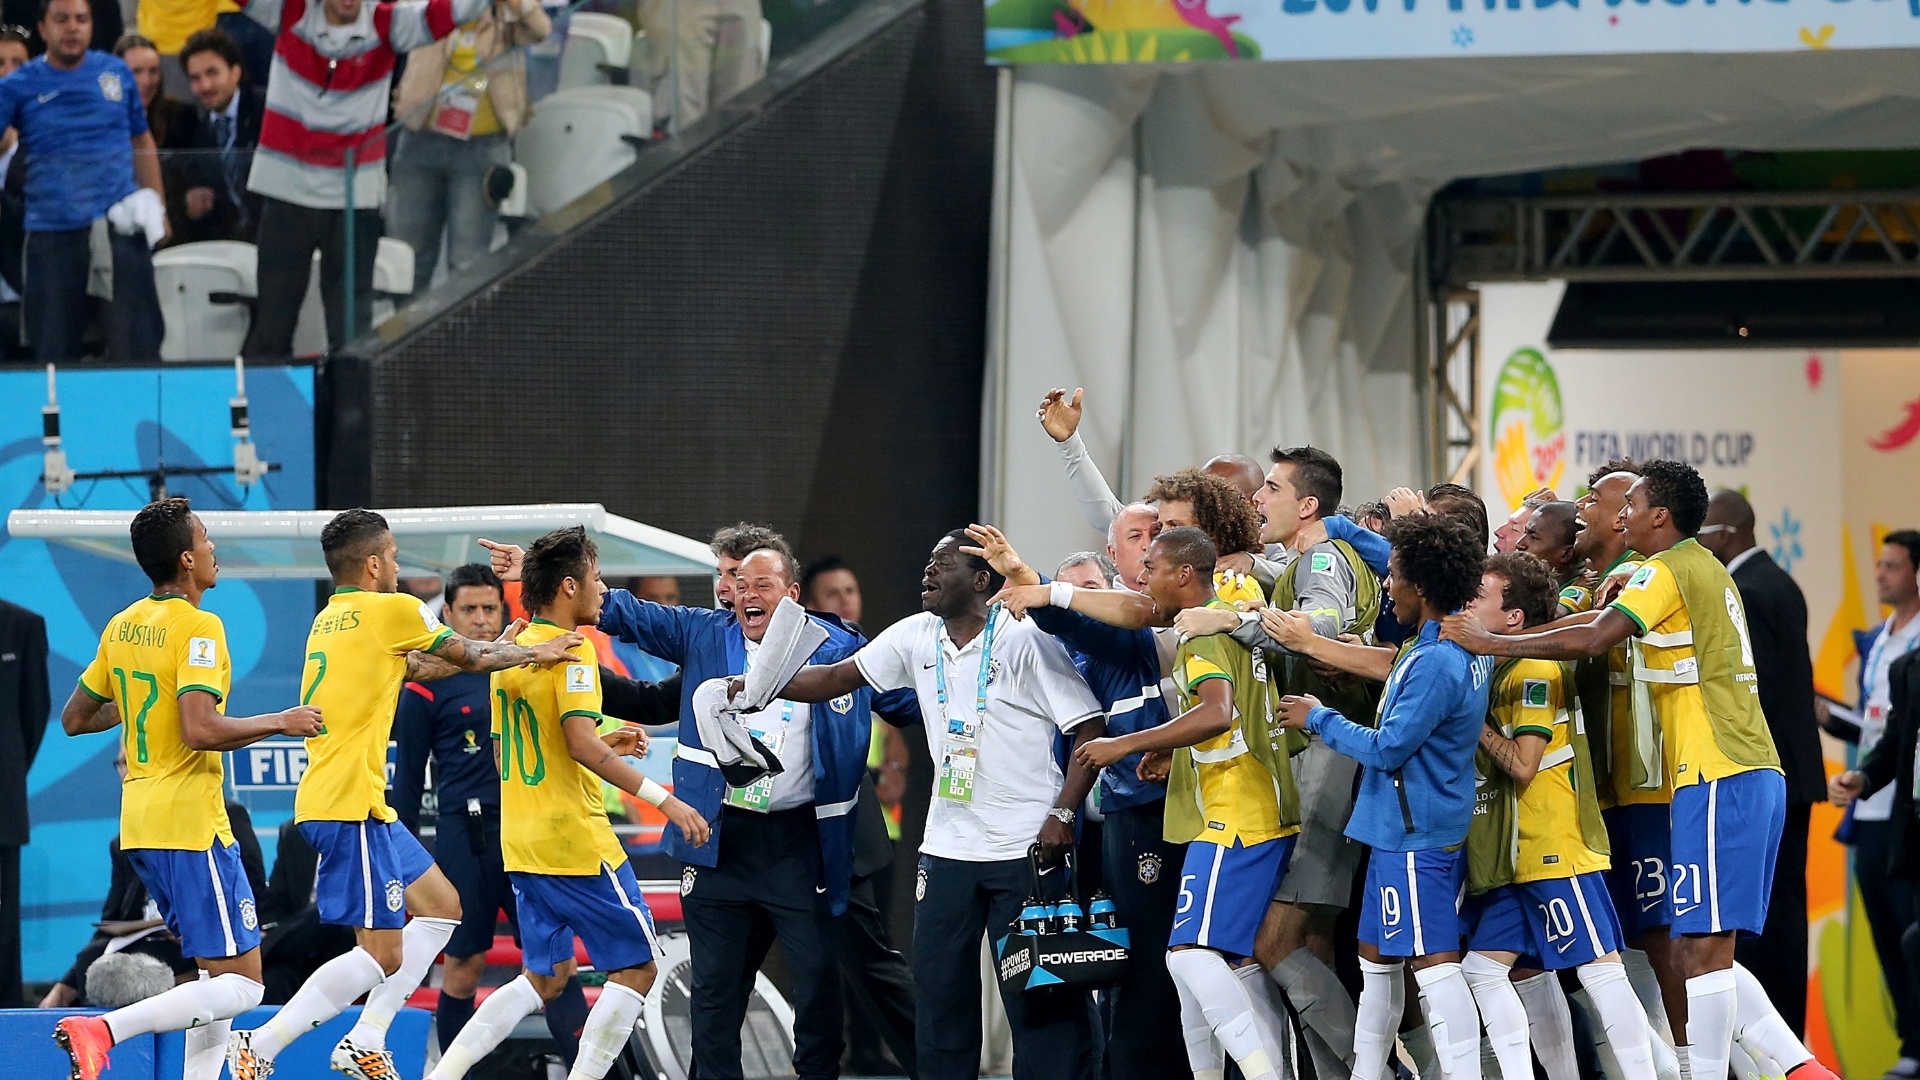 12.jun.2014 - Jogadores do Brasil comemoram com a comissão técnica e reservas após Neymar empatar o jogo contra a Croácia